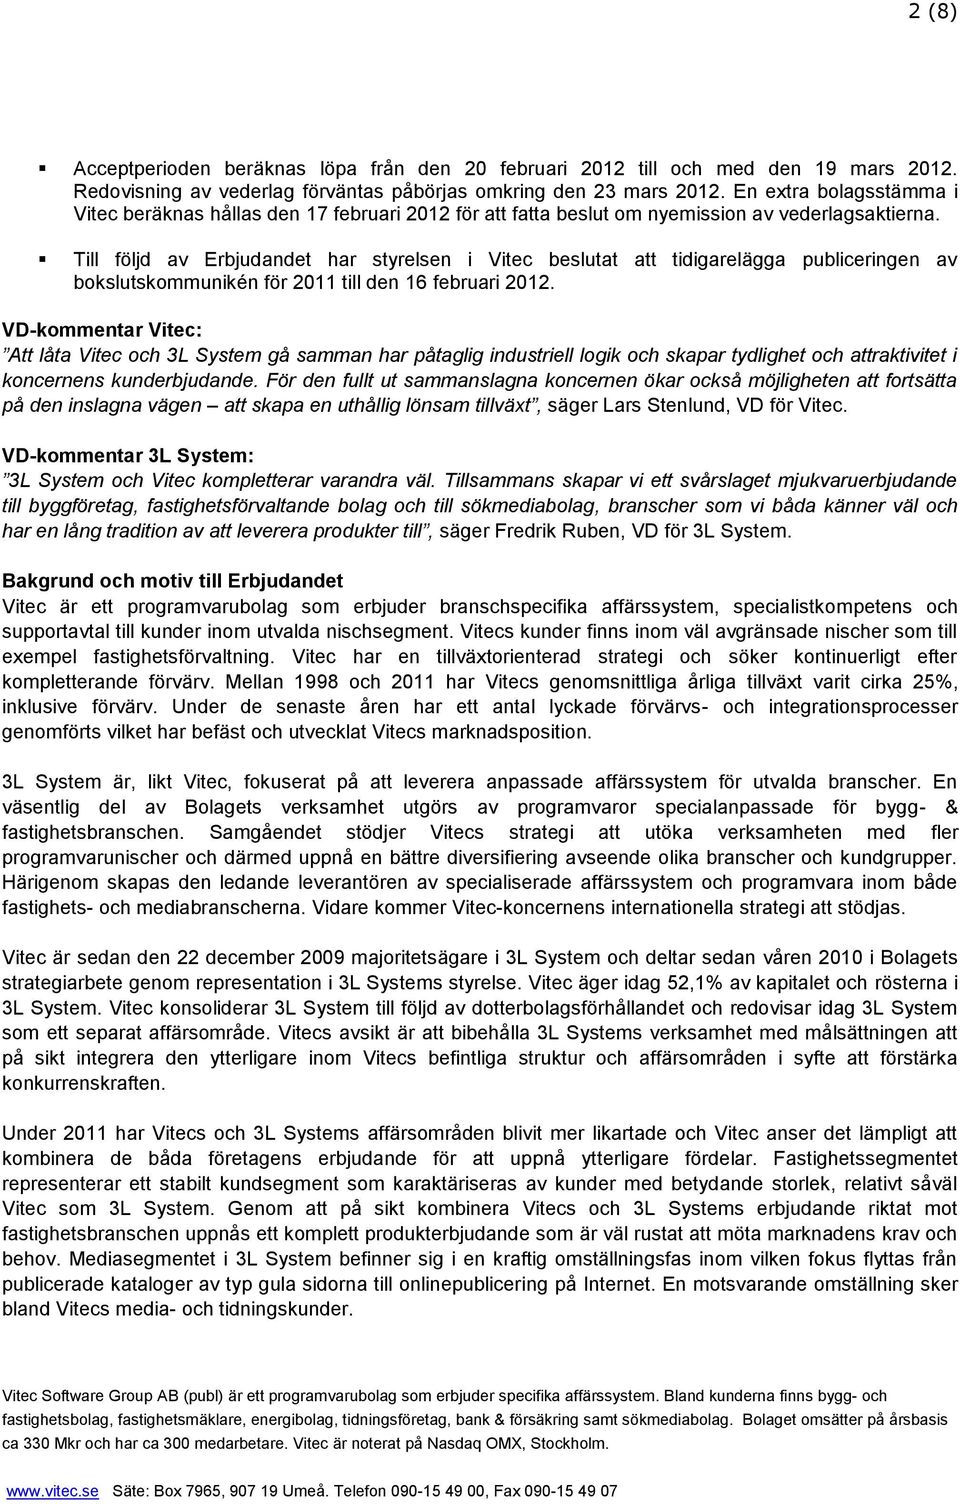 Till följd av Erbjudandet har styrelsen i Vitec beslutat att tidigarelägga publiceringen av bokslutskommunikén för 2011 till den 16 februari 2012.